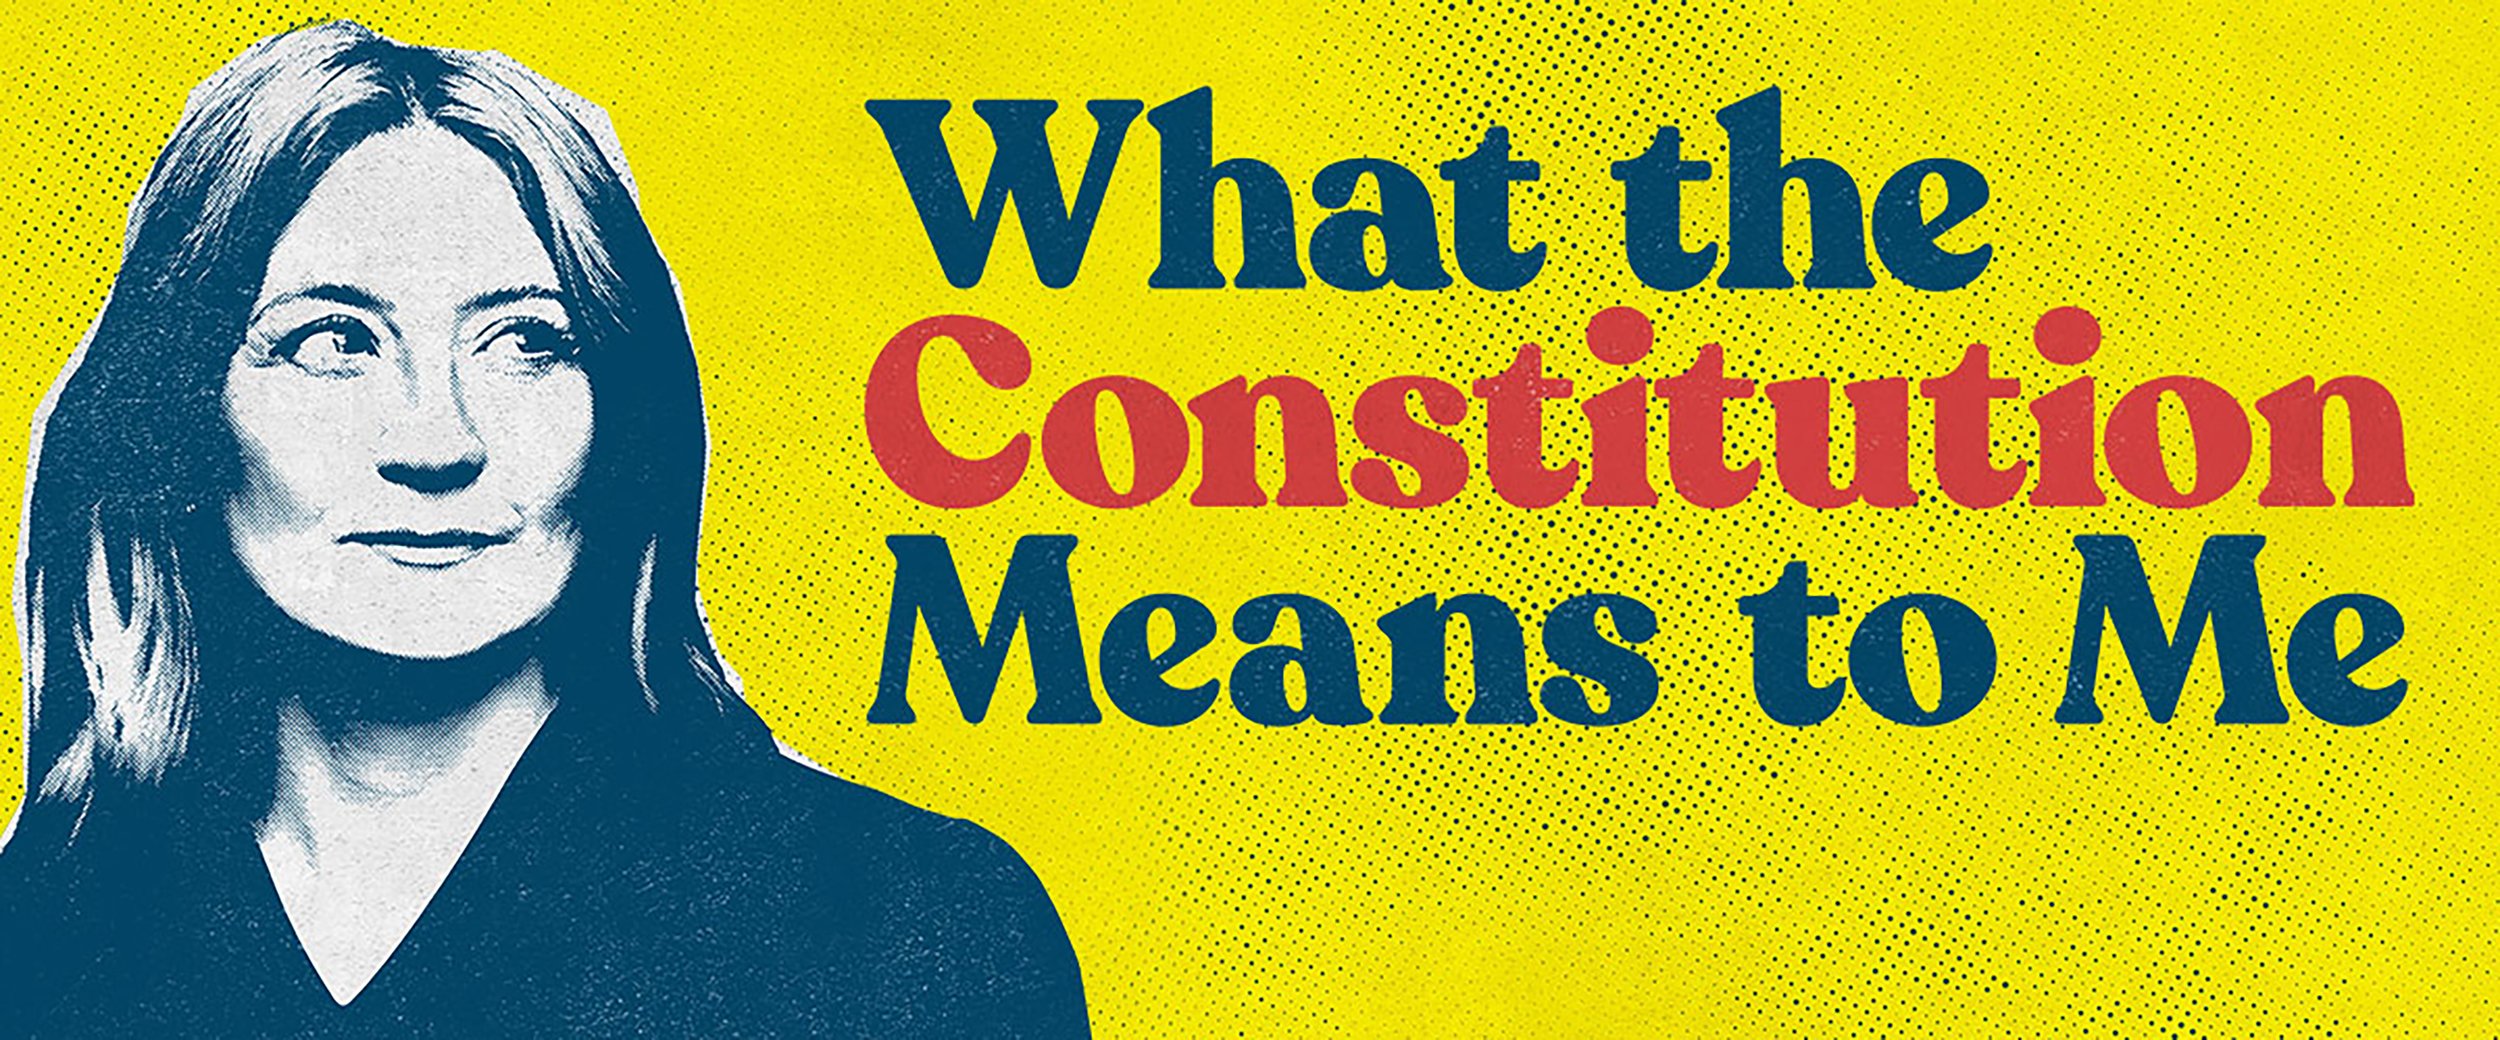 Constitution.jpg